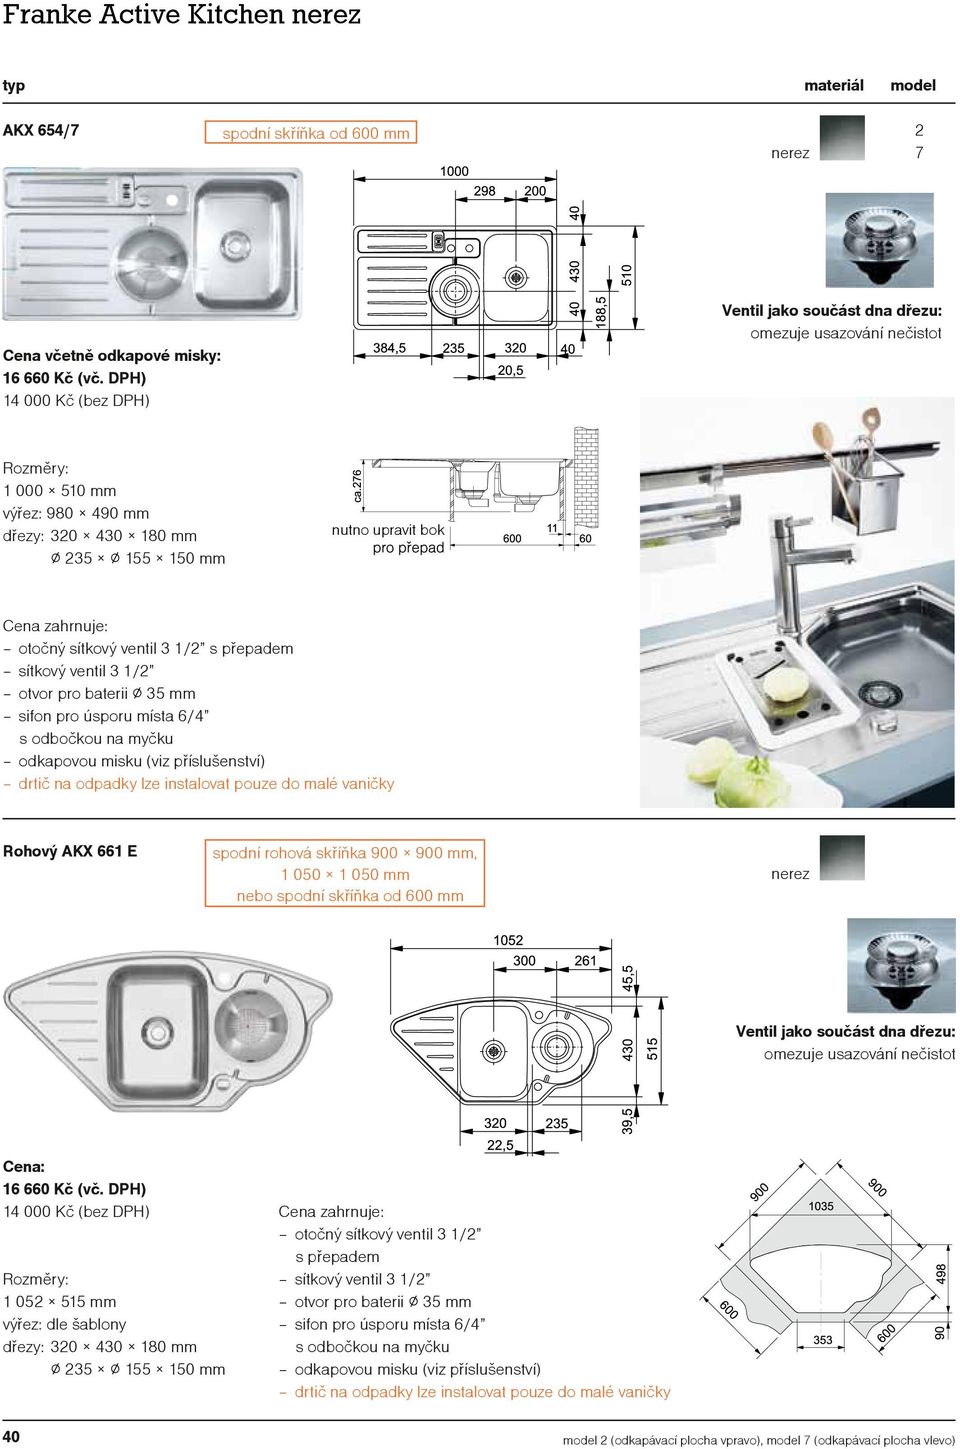 přepadem odkapovou misku (viz příslušenství) drtič na odpadky lze instalovat pouze do malé vaničky Rohový AKX 661 E spodní rohová skříňka 900 900 mm, 1 050 1 050 mm nebo Ventil jako součást dna